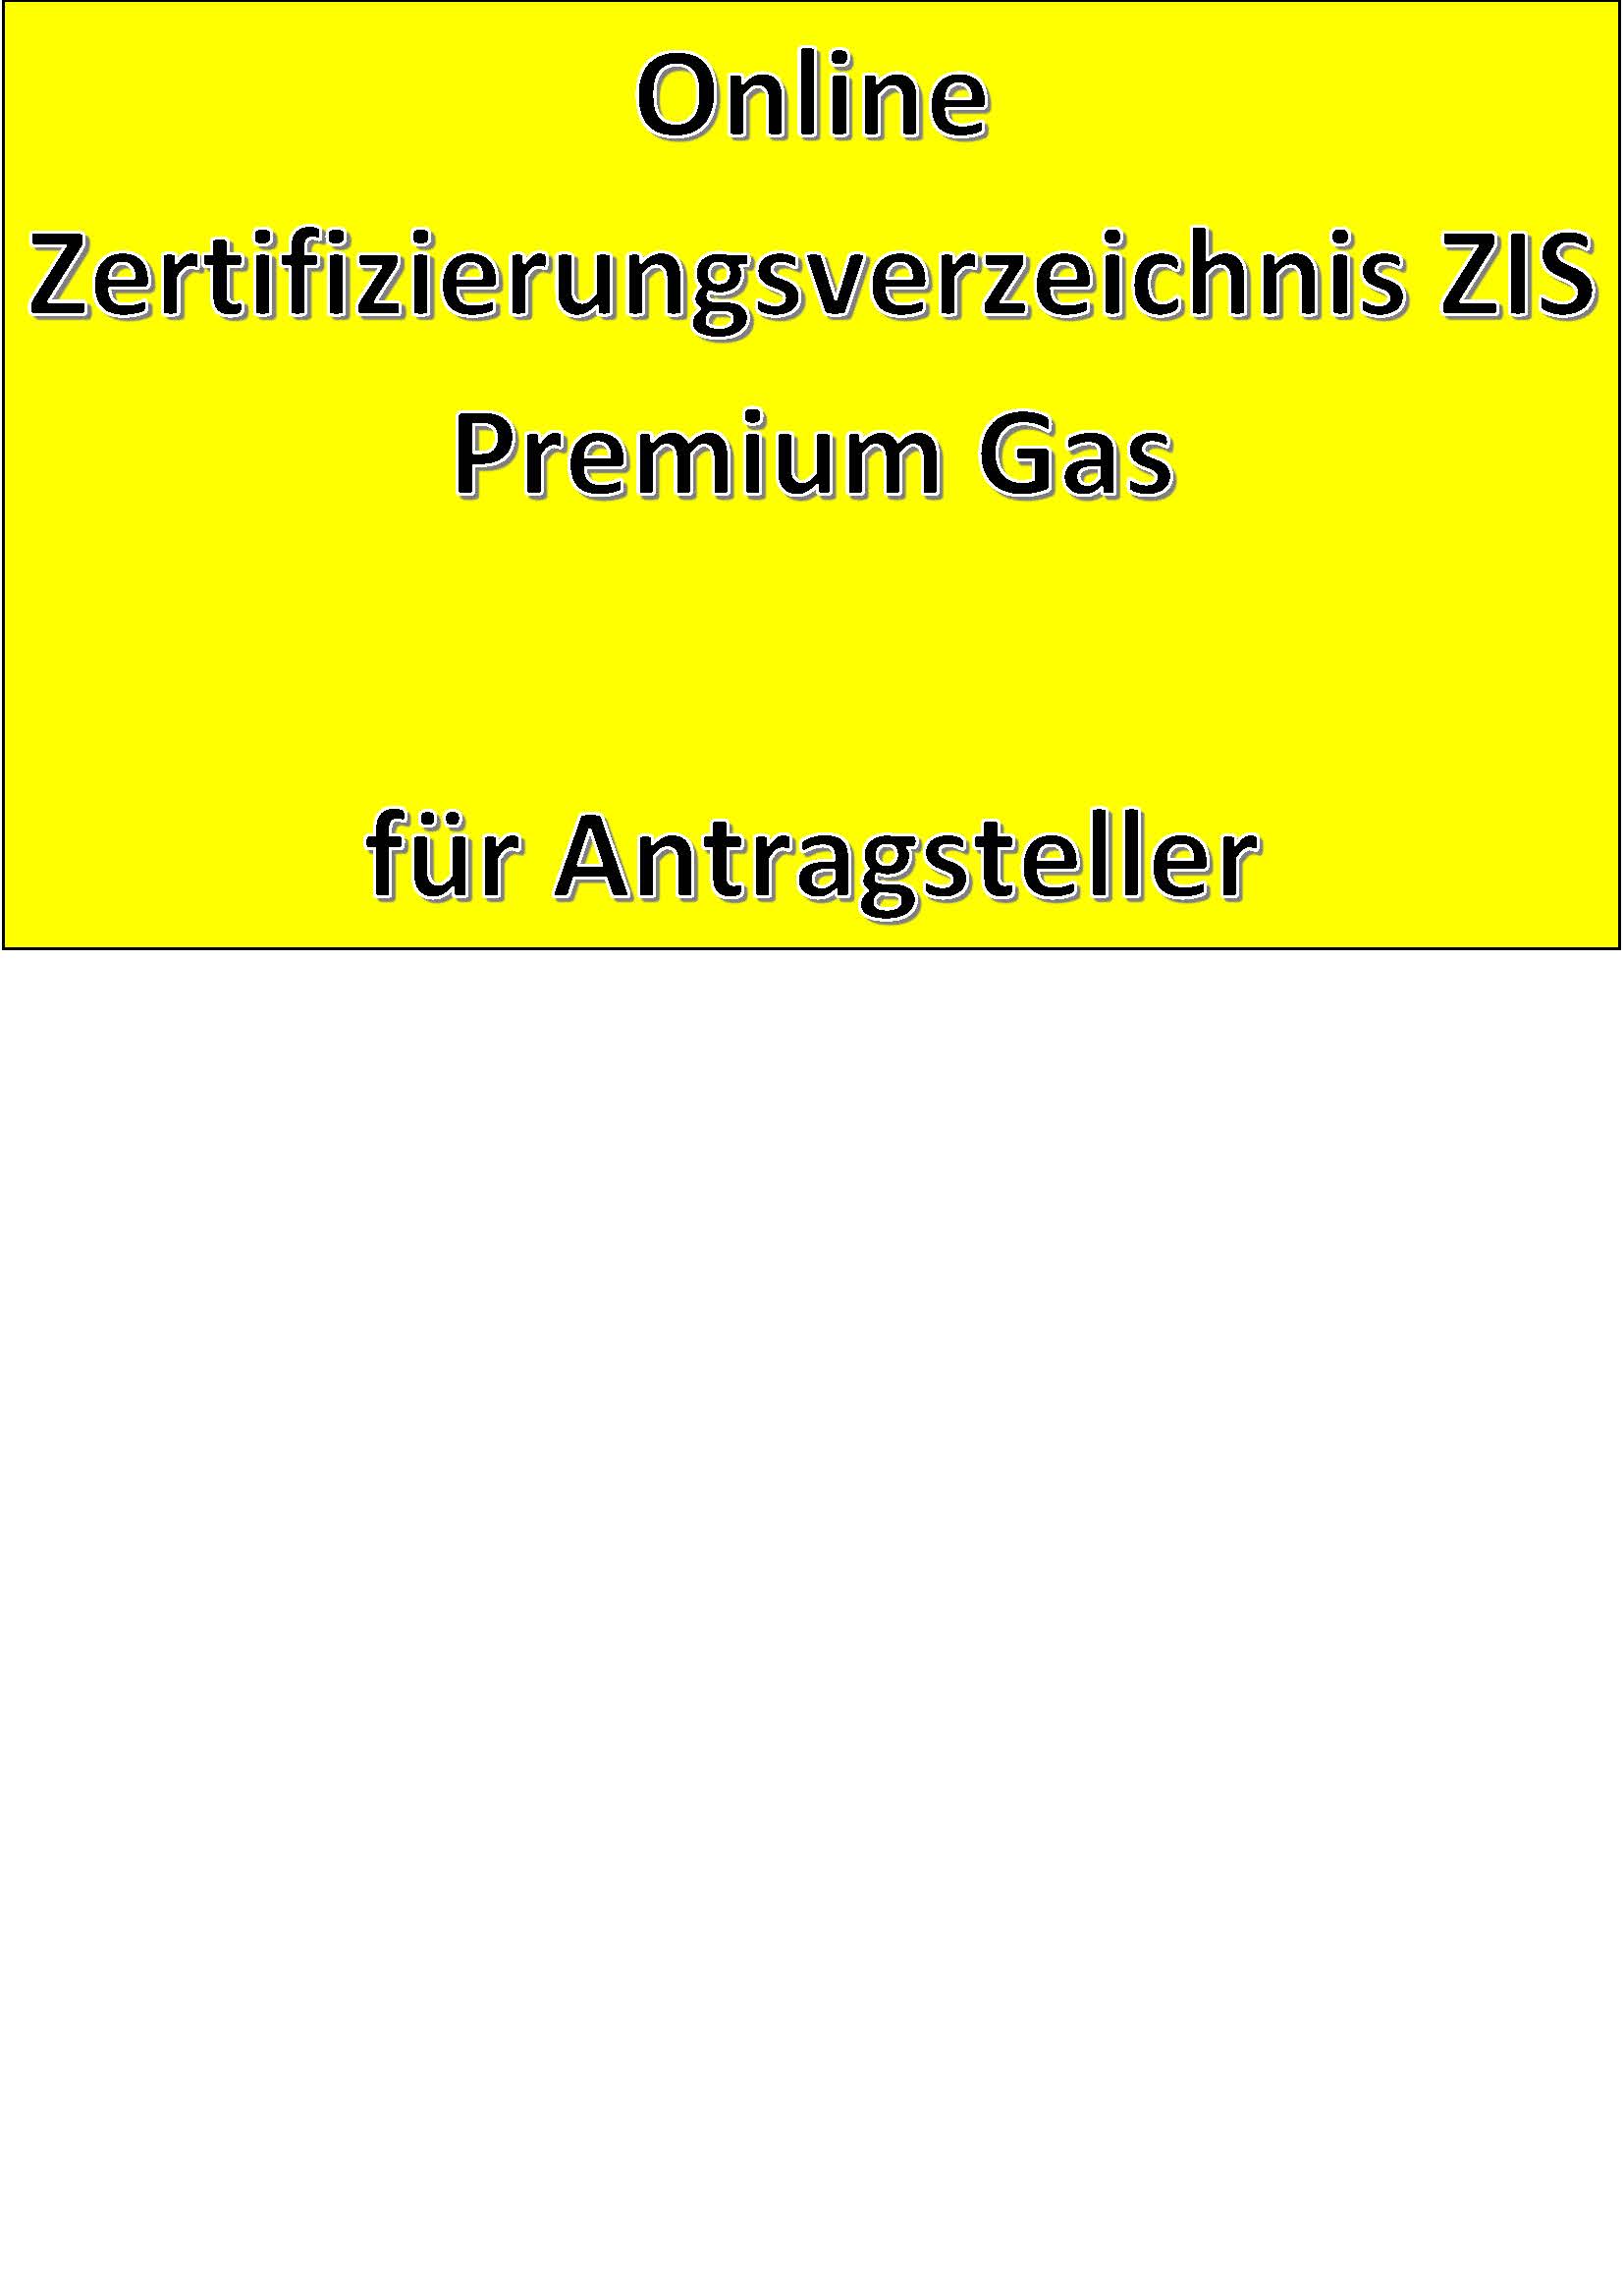 Online Zertifizierungsverzeichnis ZIS Premium Gas für Antragsteller